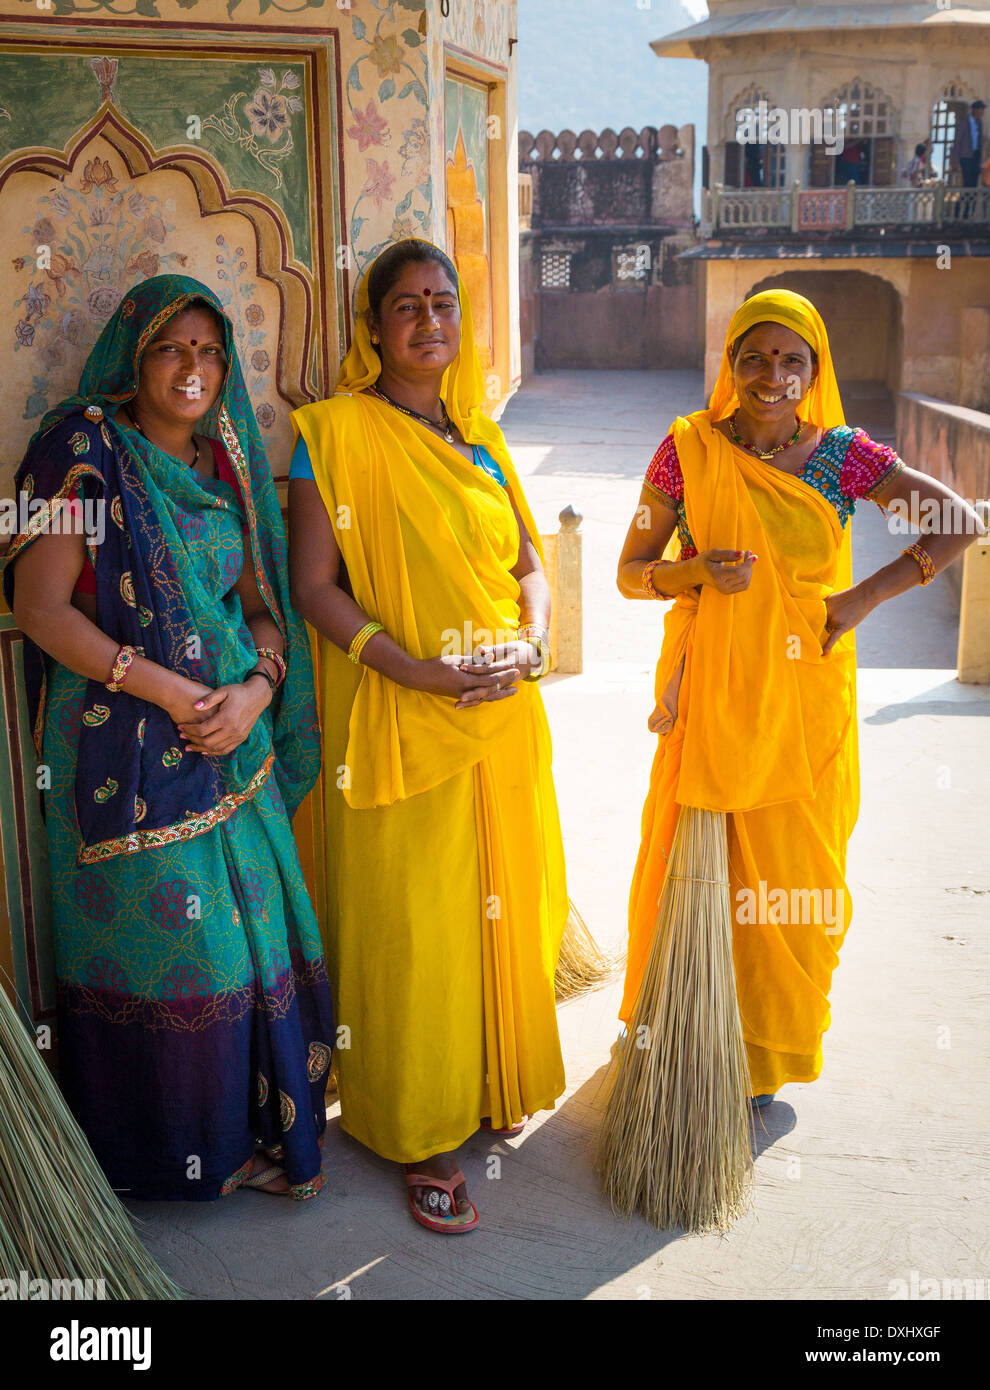 Les femmes indiennes à Fort Amer, Rajasthan, Inde Banque D'Images